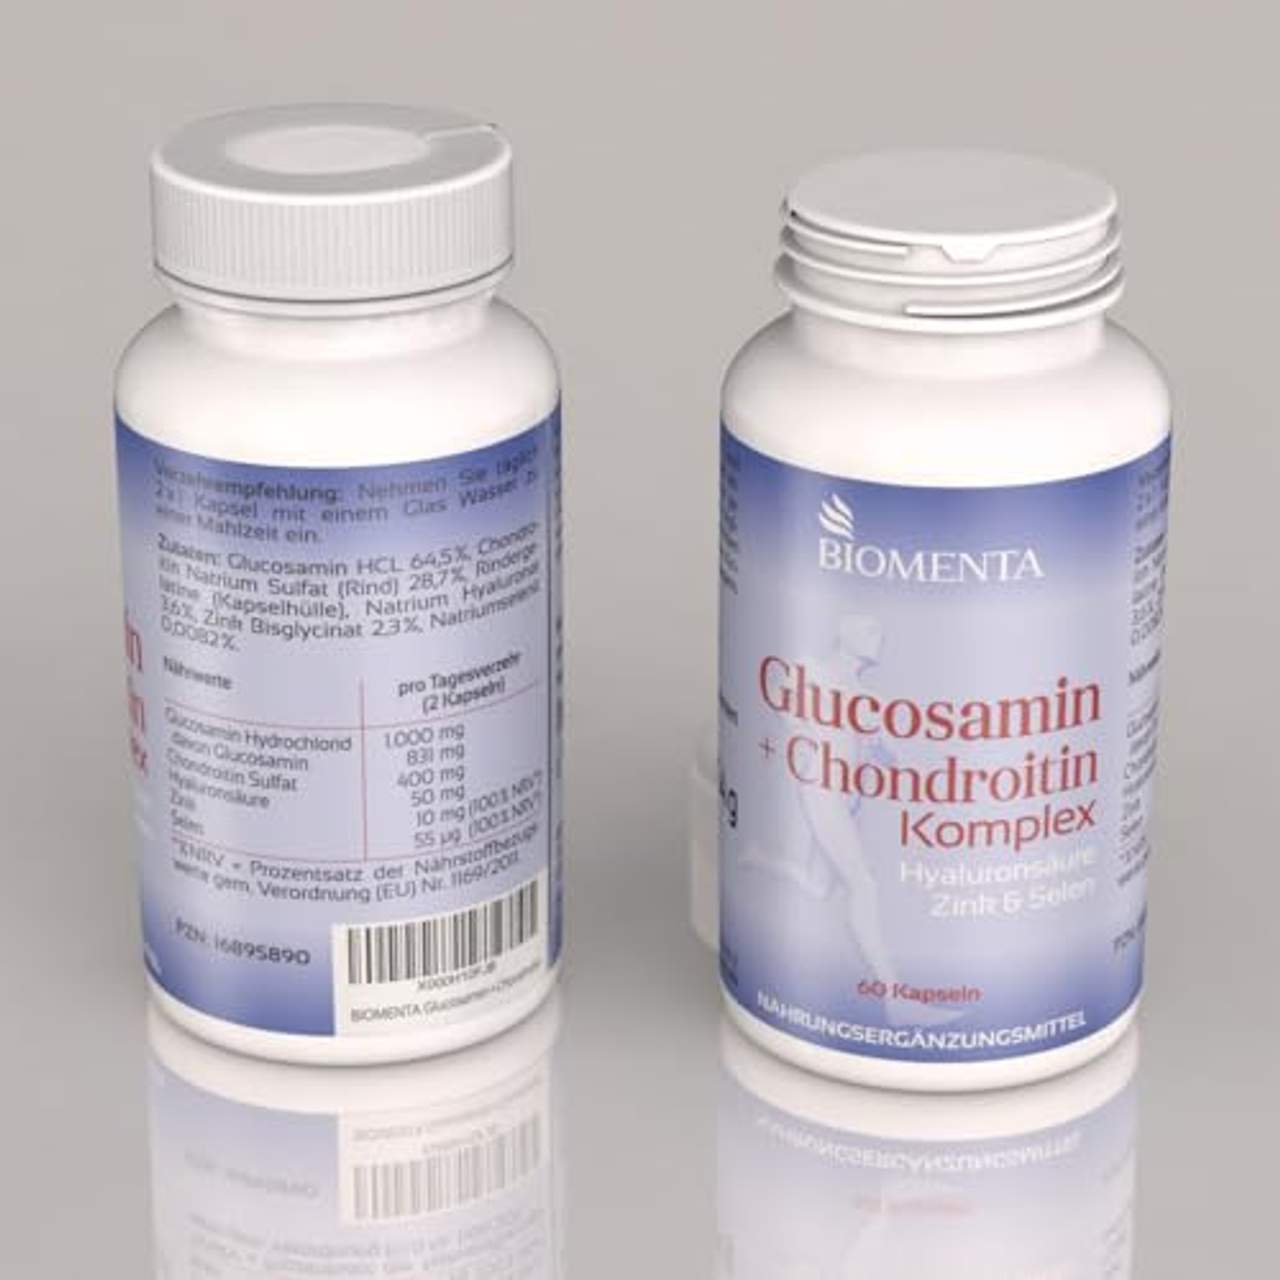 BIOMENTA Glucosamin Chondroitin Komplex